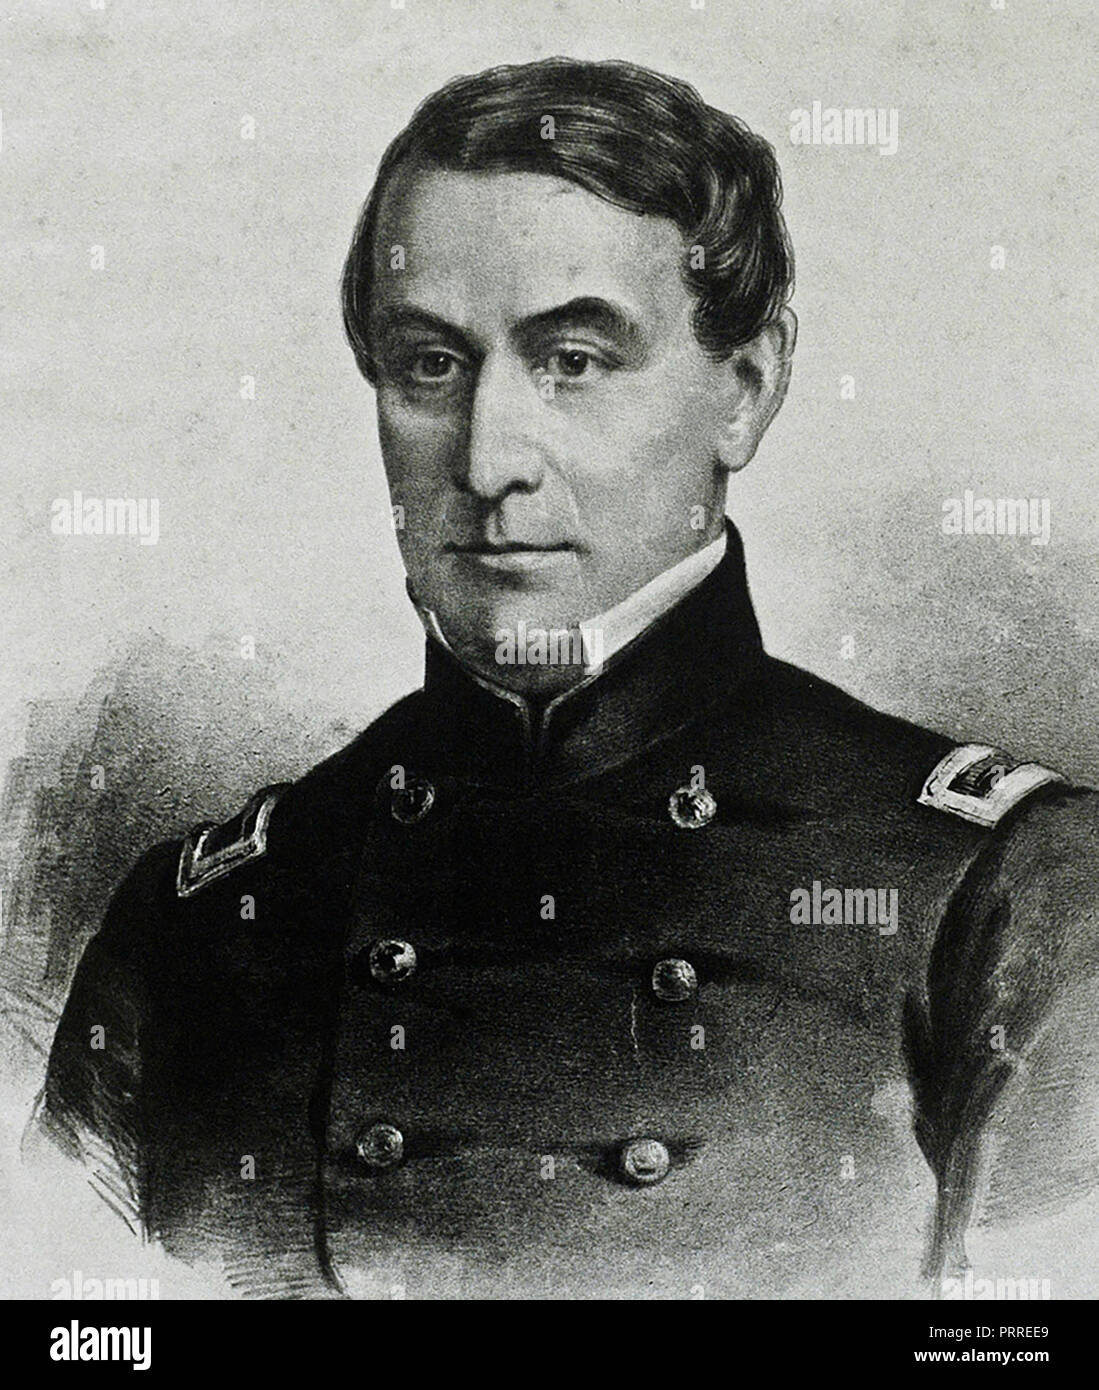 Major Robert Anderson - Commander of Fort Sumter, 1860 Stock Photo